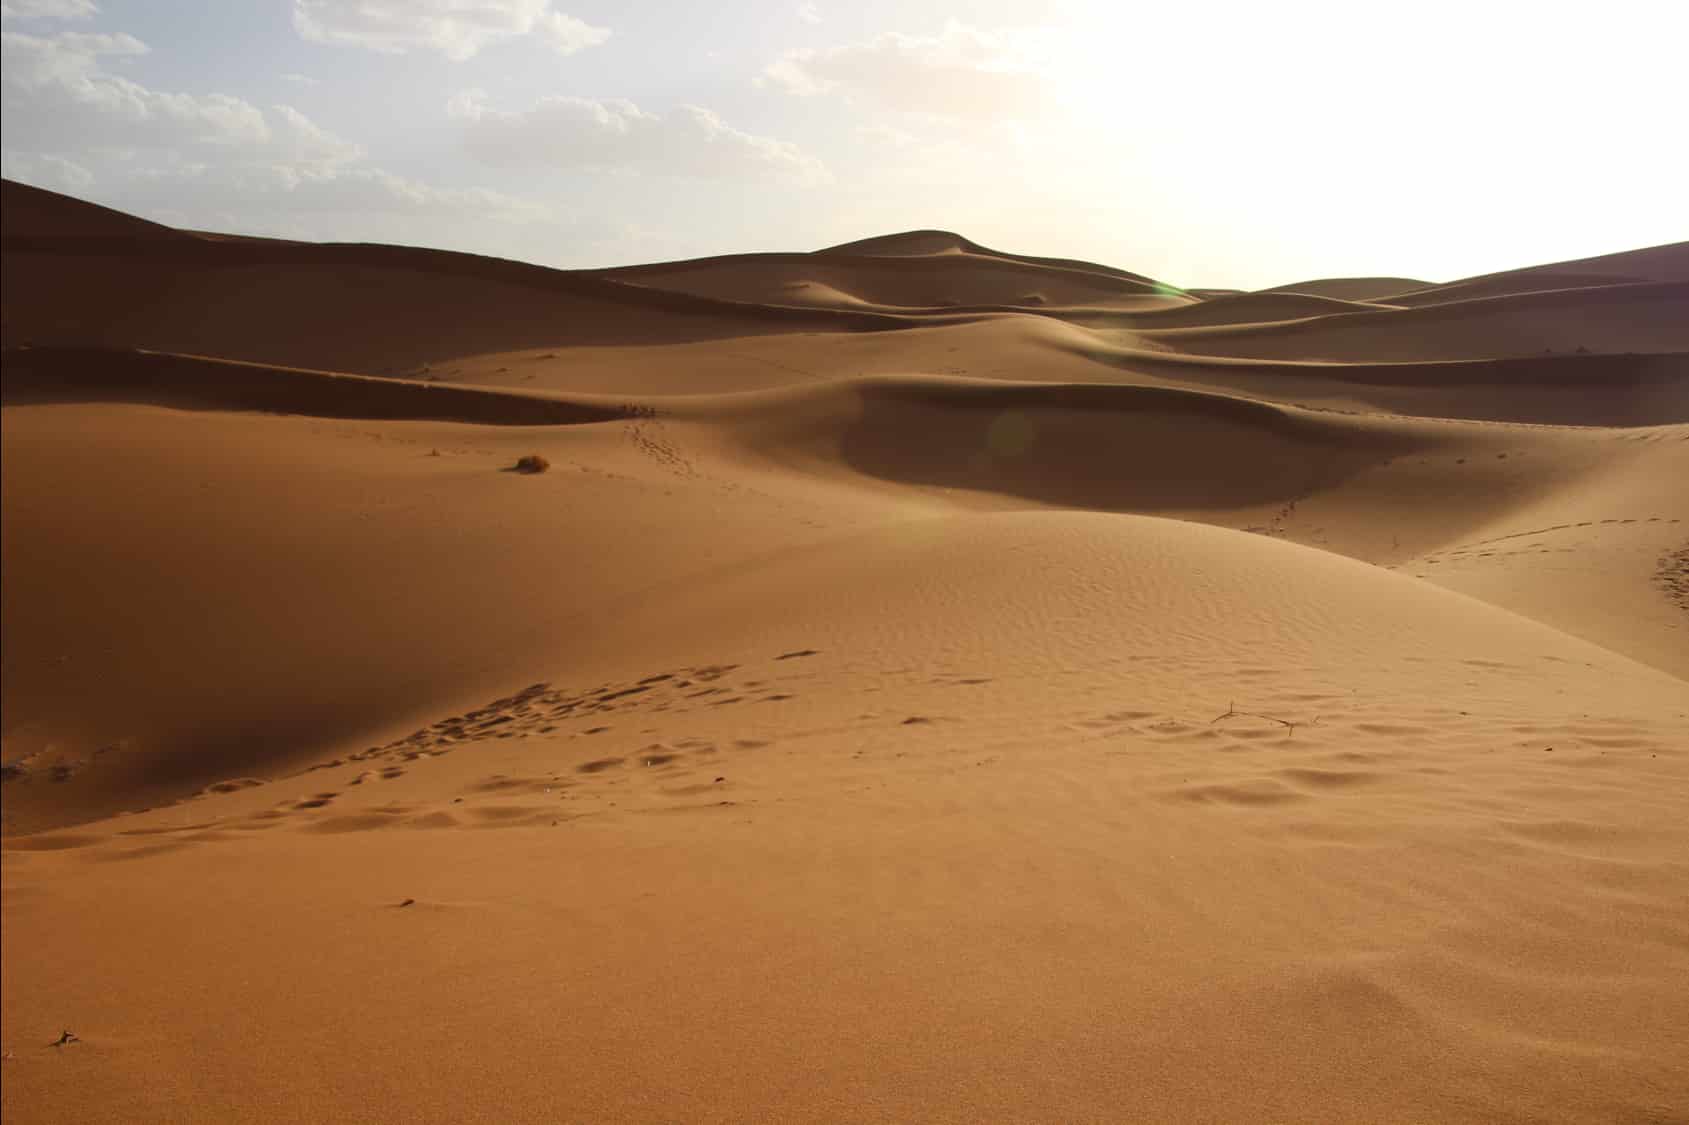 The endless desert